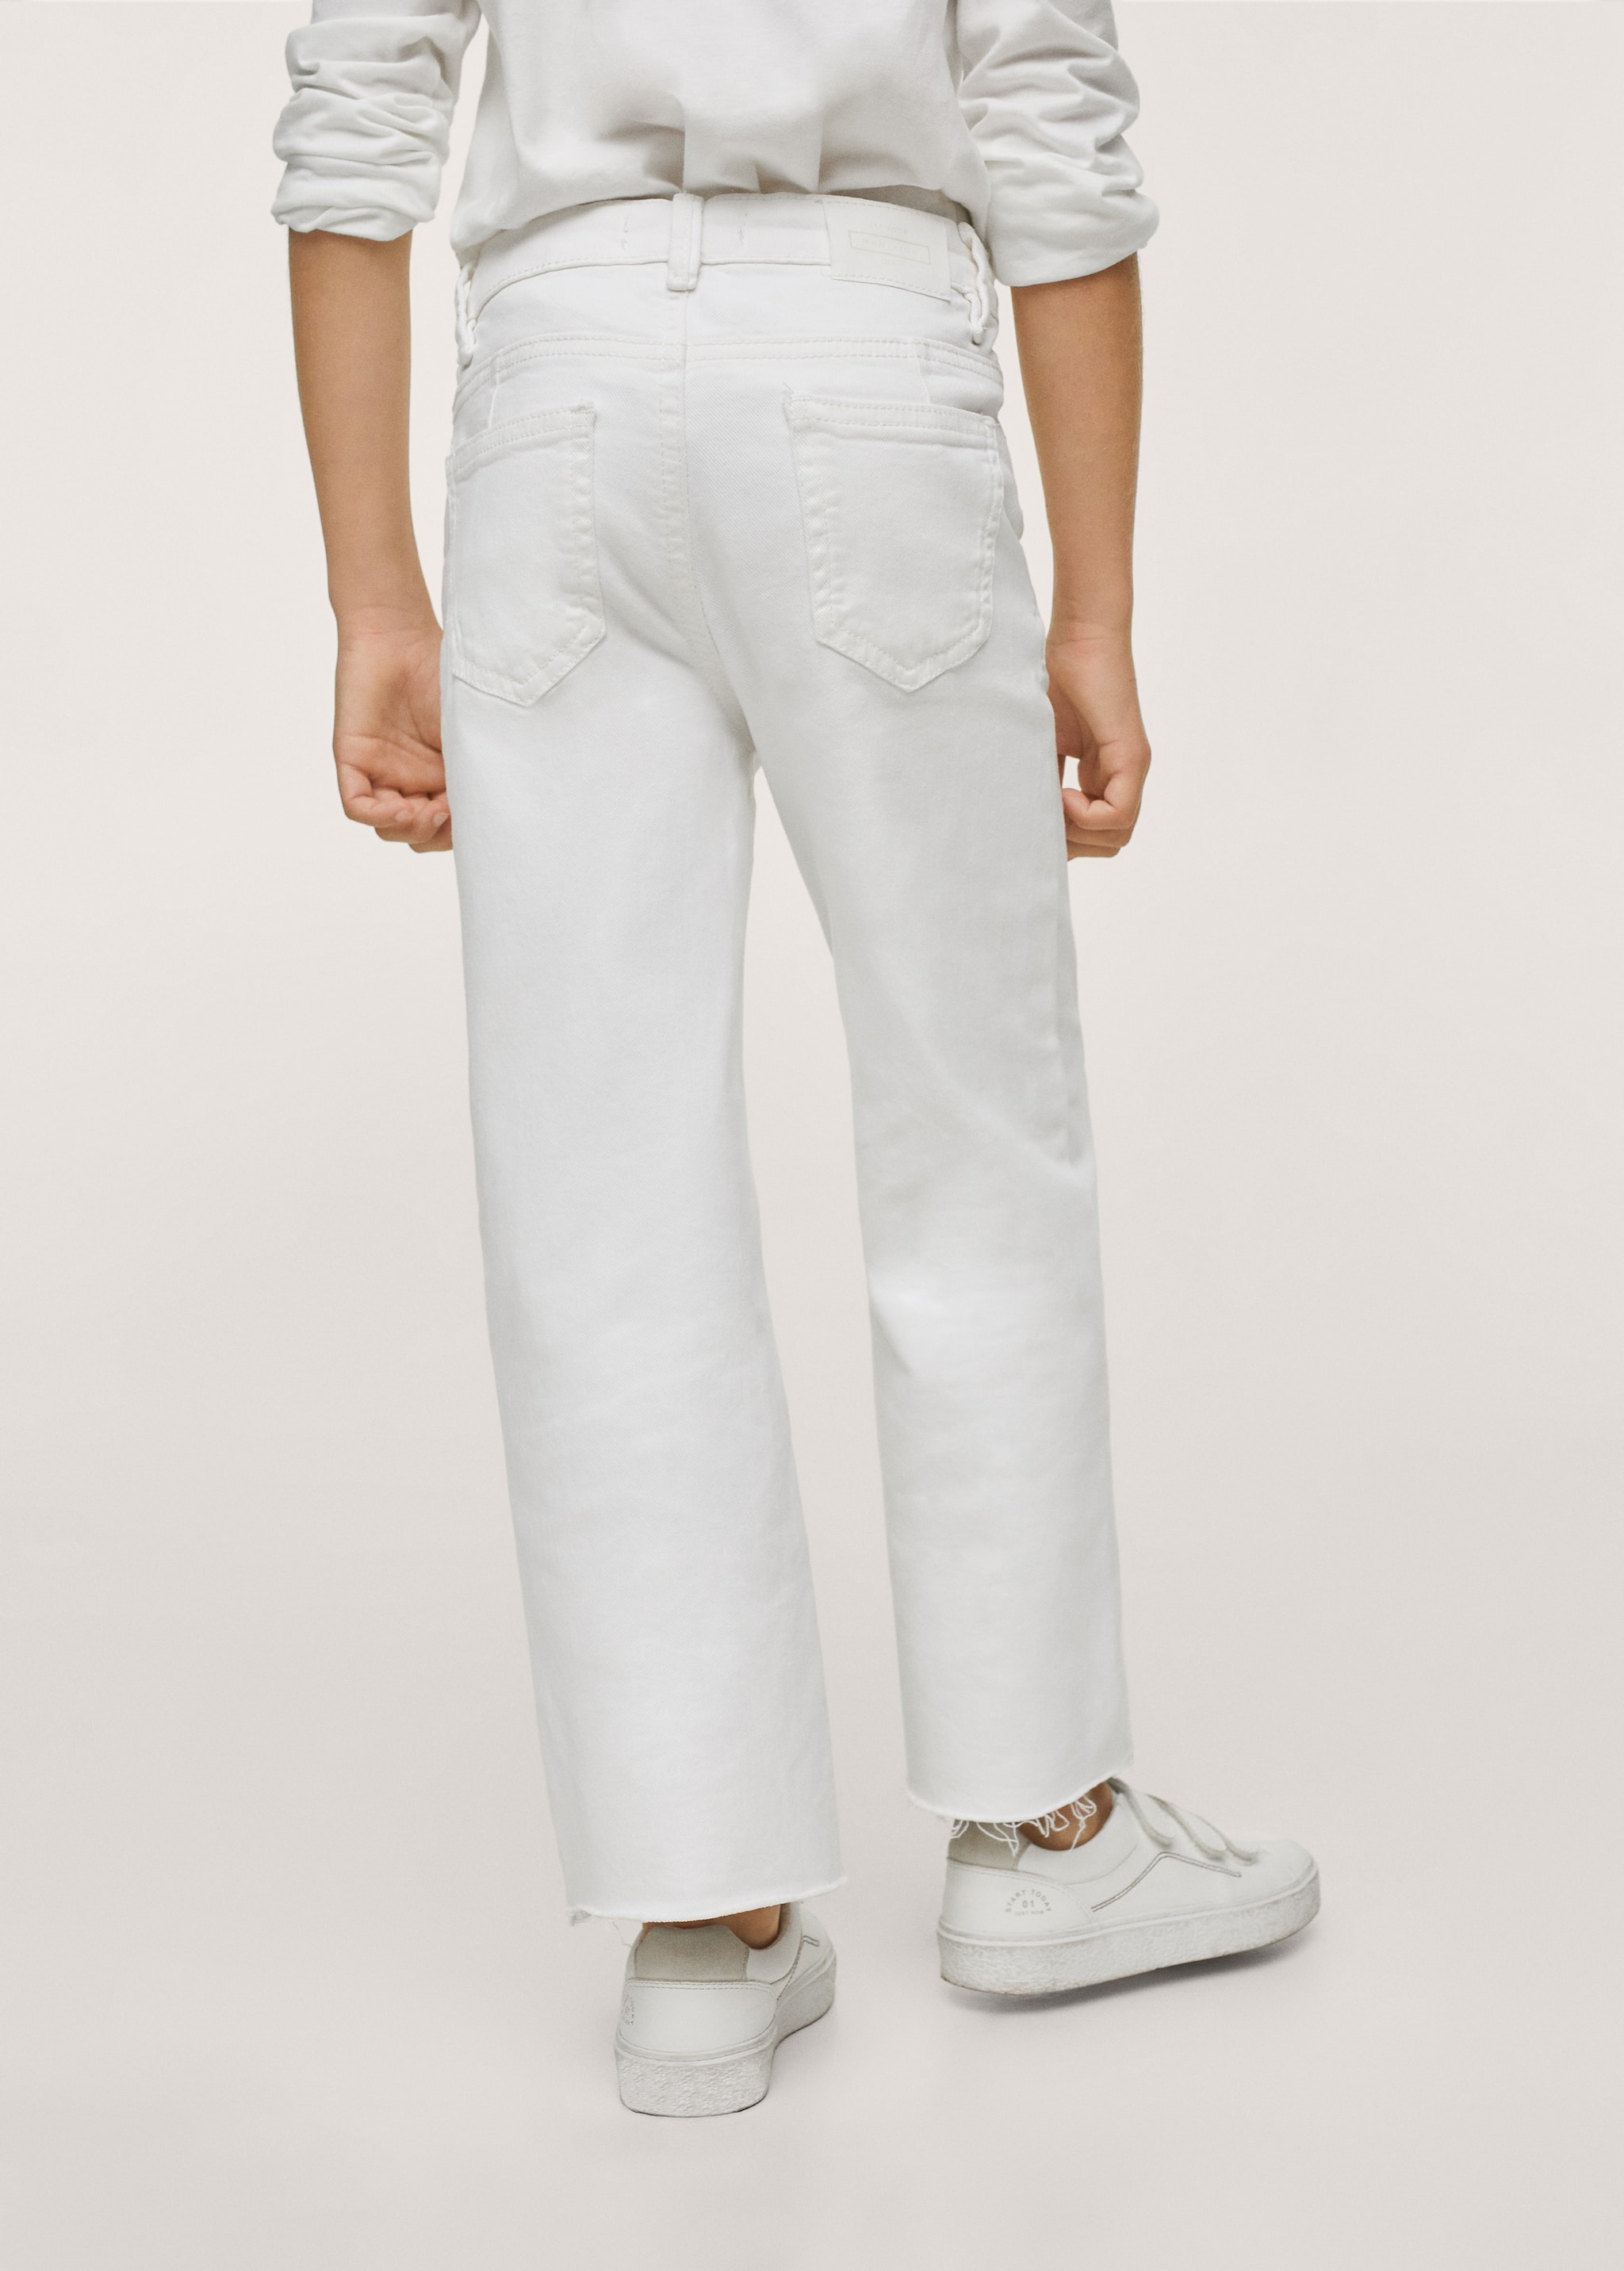 Culotte-Jeans mit ausgefranstem Saum - Rückseite des Artikels